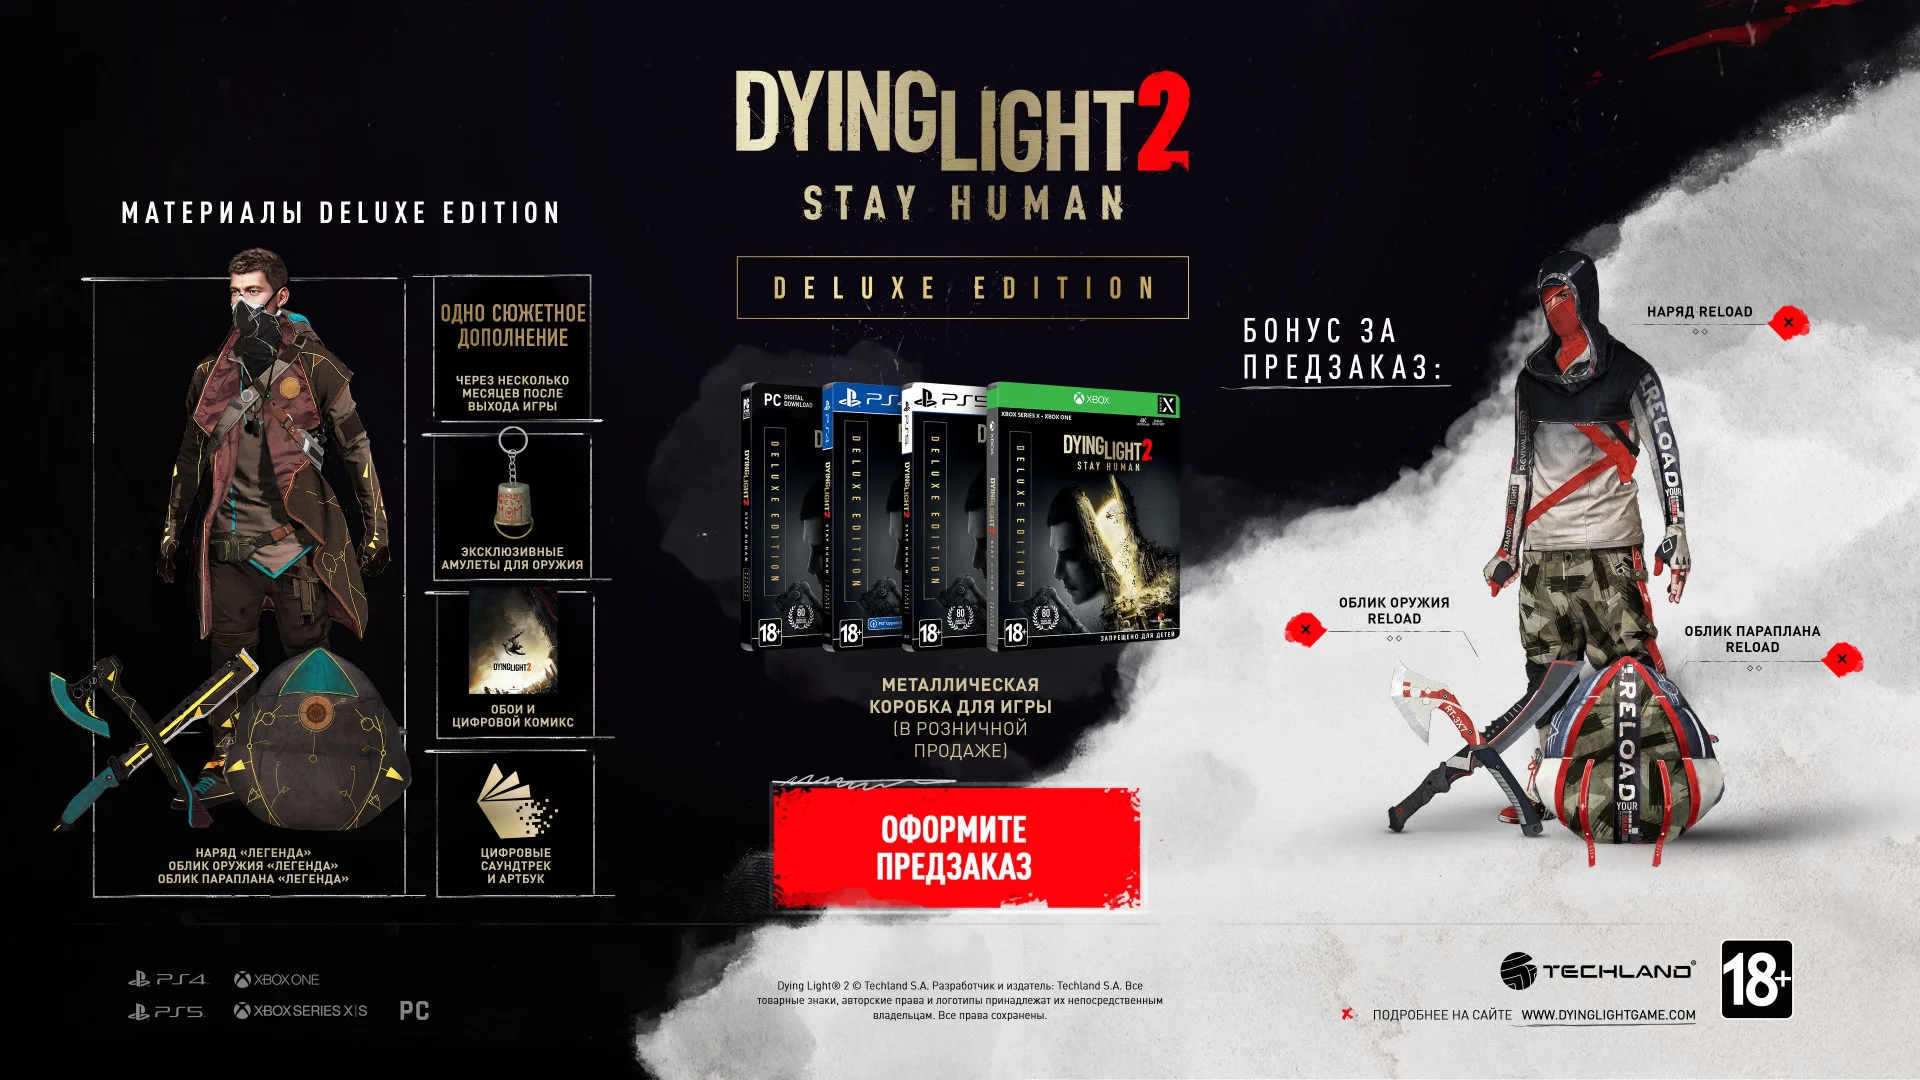 Цены, разные издания, коллекционка и предзаказы Dying Light 2 - фото 2